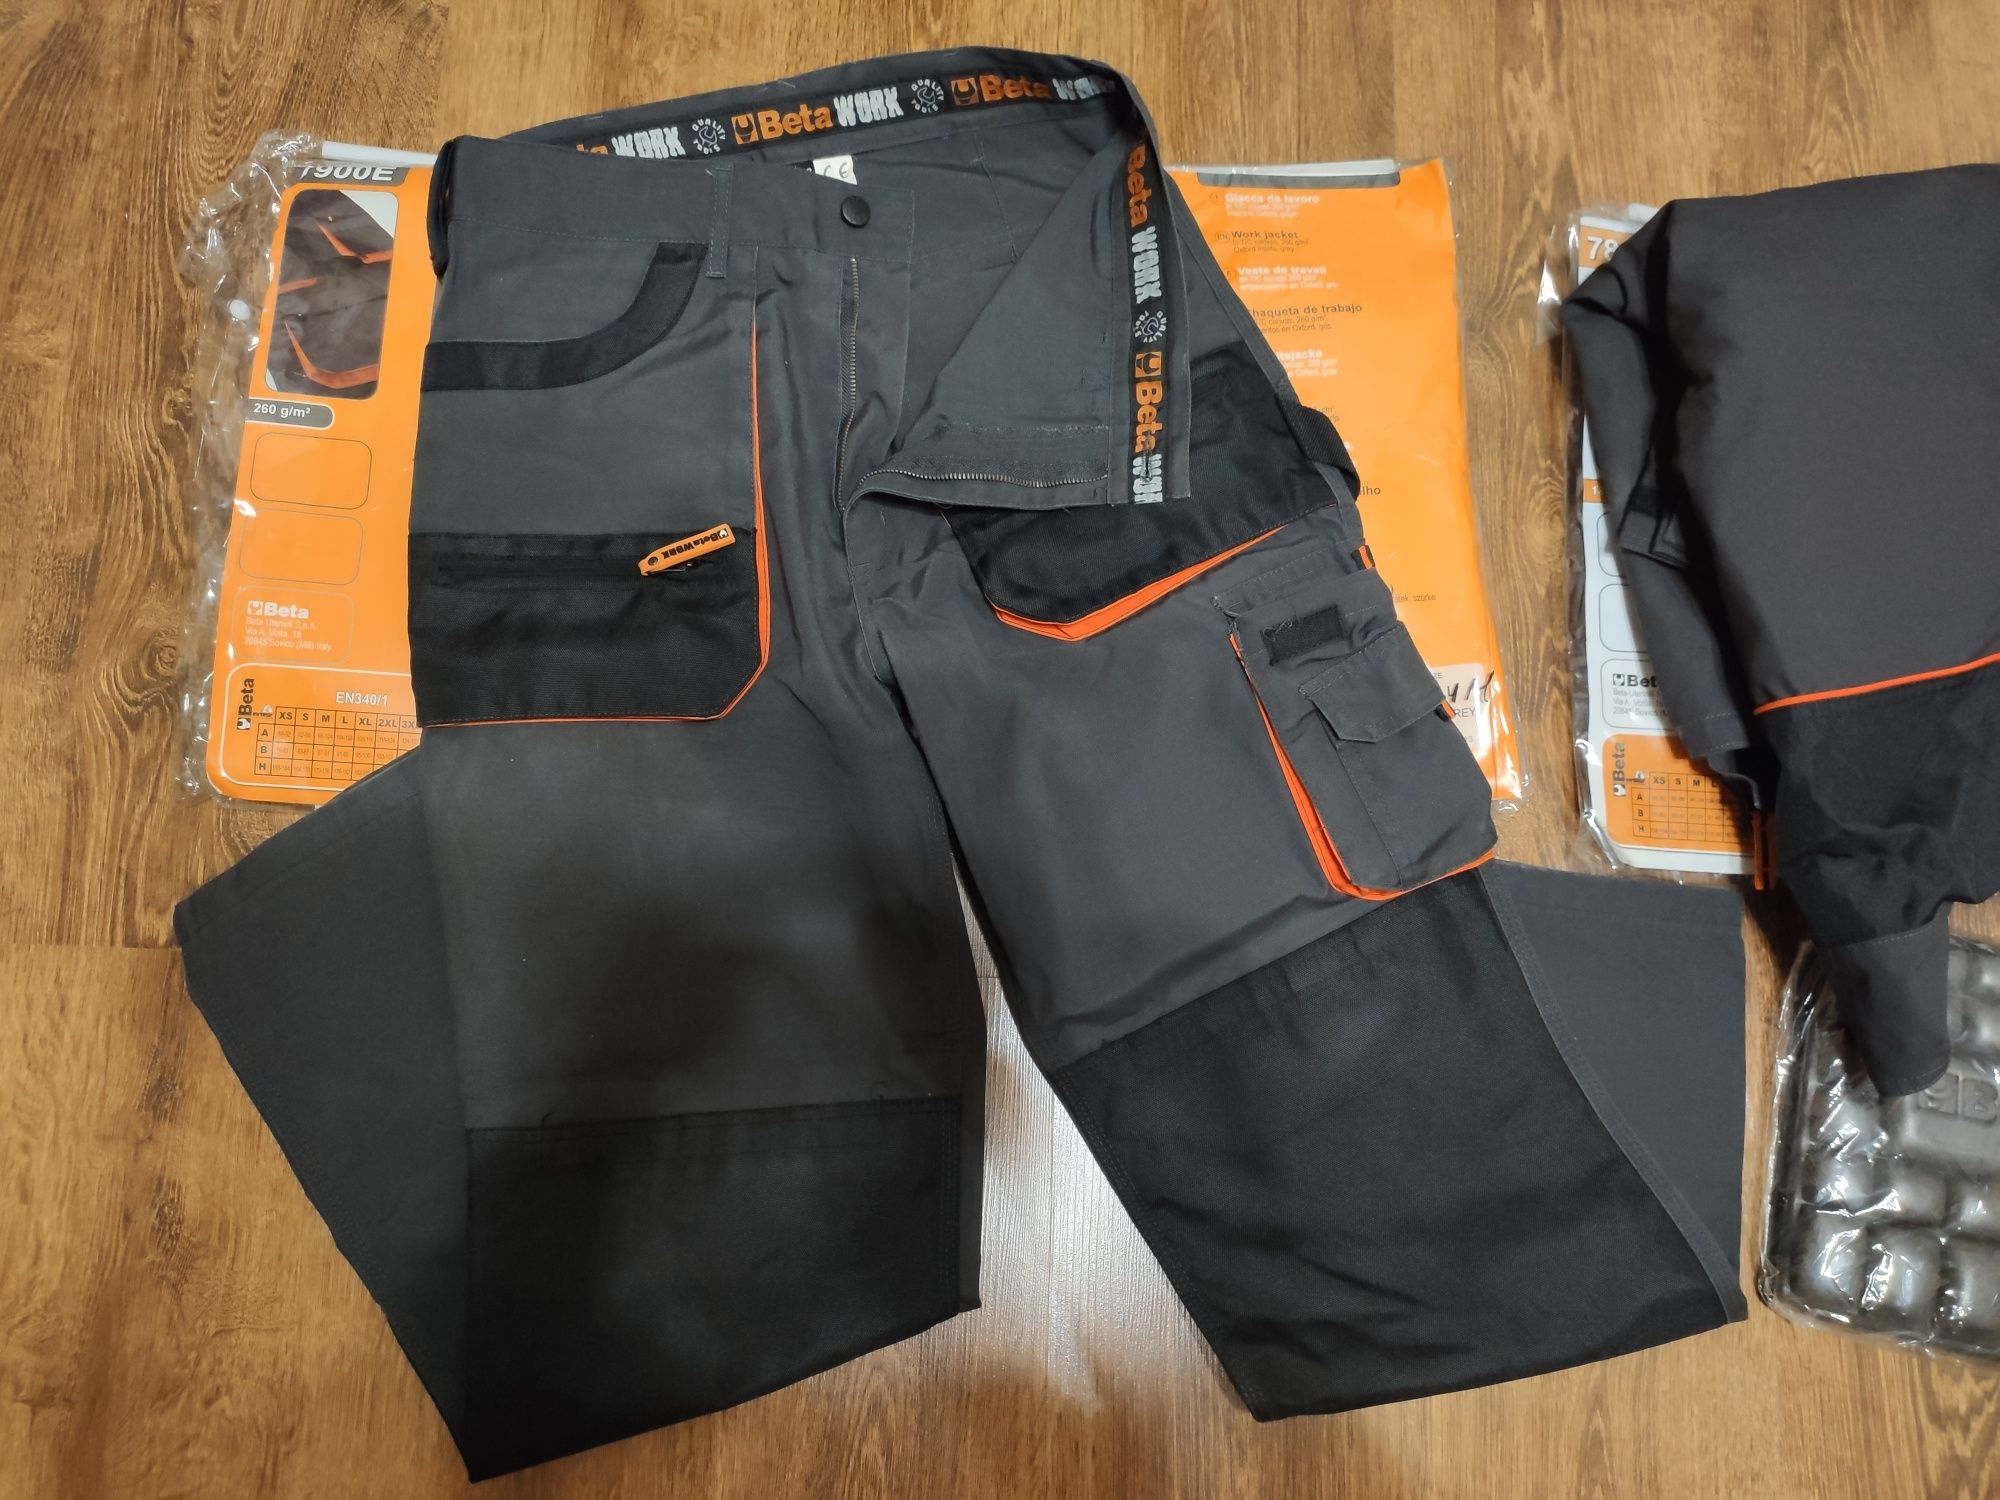 Spodnie Beta work 7900E 
Gramatura 260g/m2 
Rozmiar M nr  0902
Cena 85